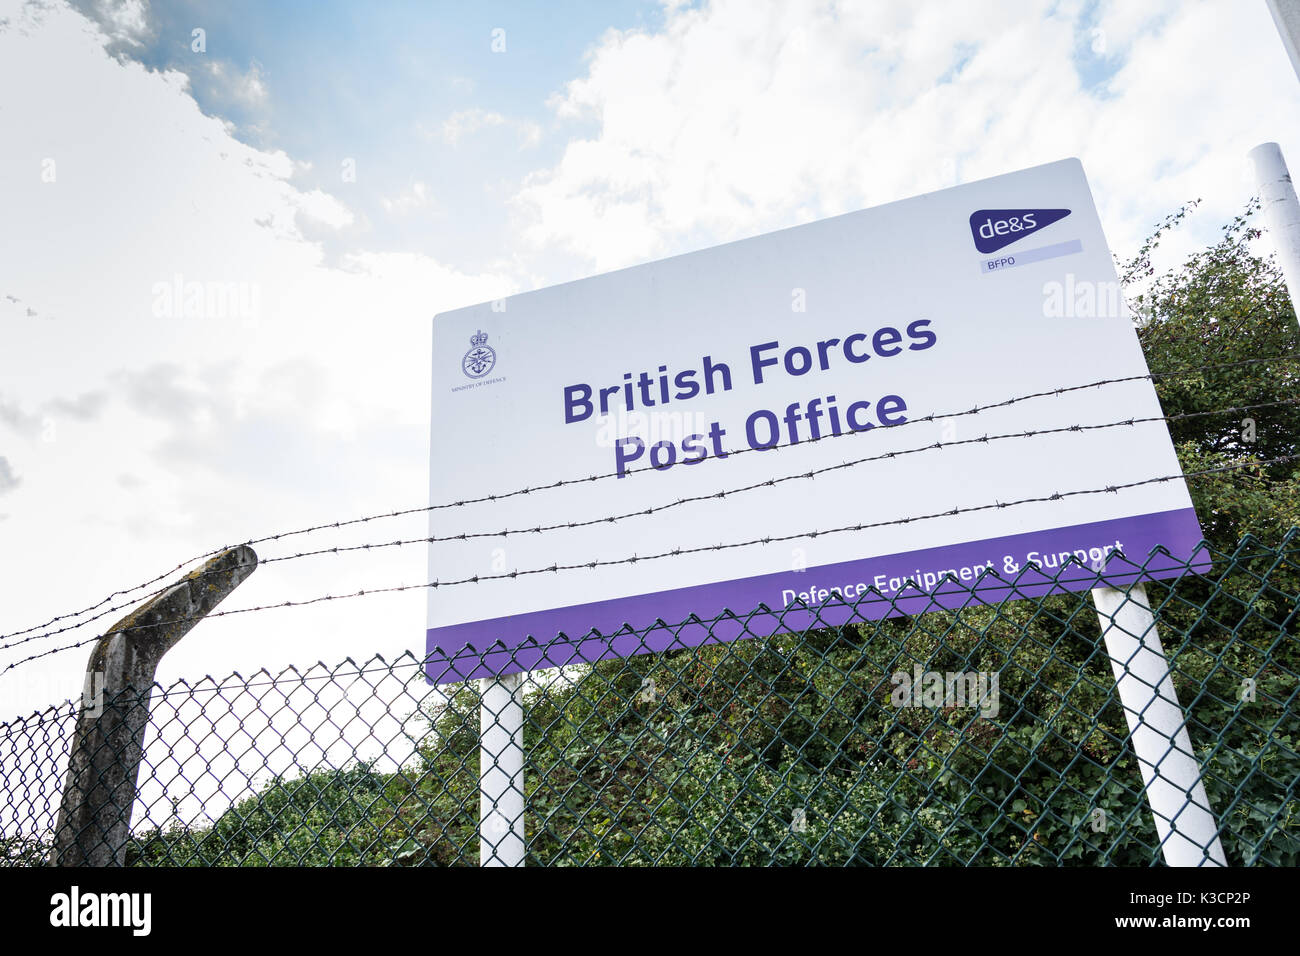 British Forces Post Office (BFPO), RAF Northolt, South Ruislip, London Borough of Hillingdon, London, UK. Stock Photo